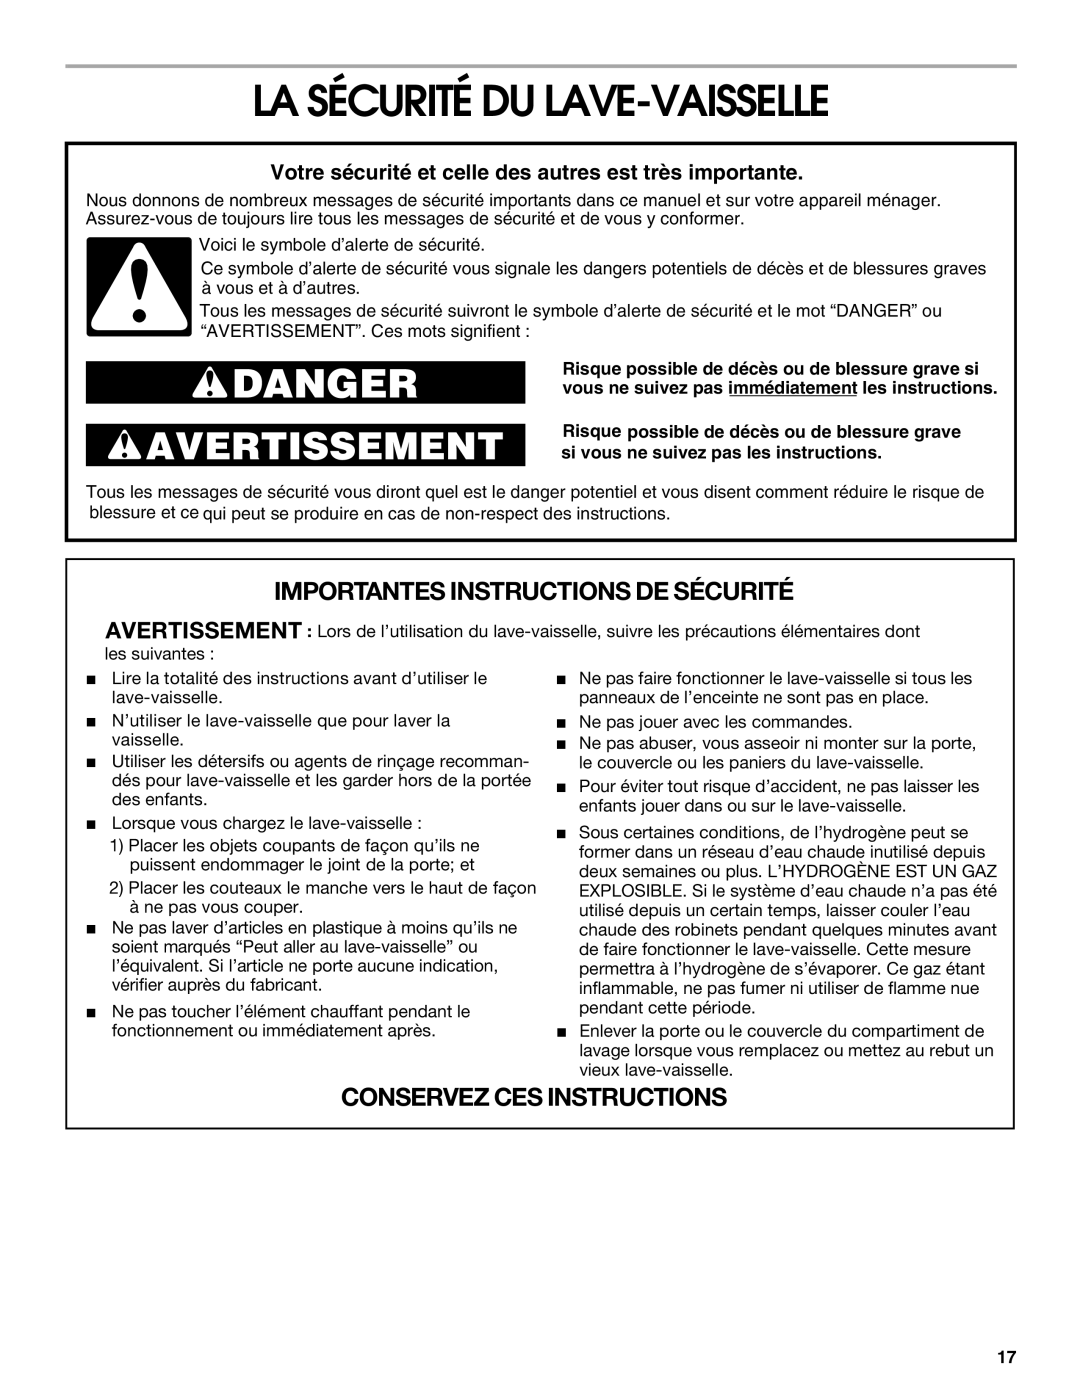 Roper rud4000 manual La Sécurité Du Lave-Vaisselle, Danger, Avertissement, Importantes Instructions De Sécurité 